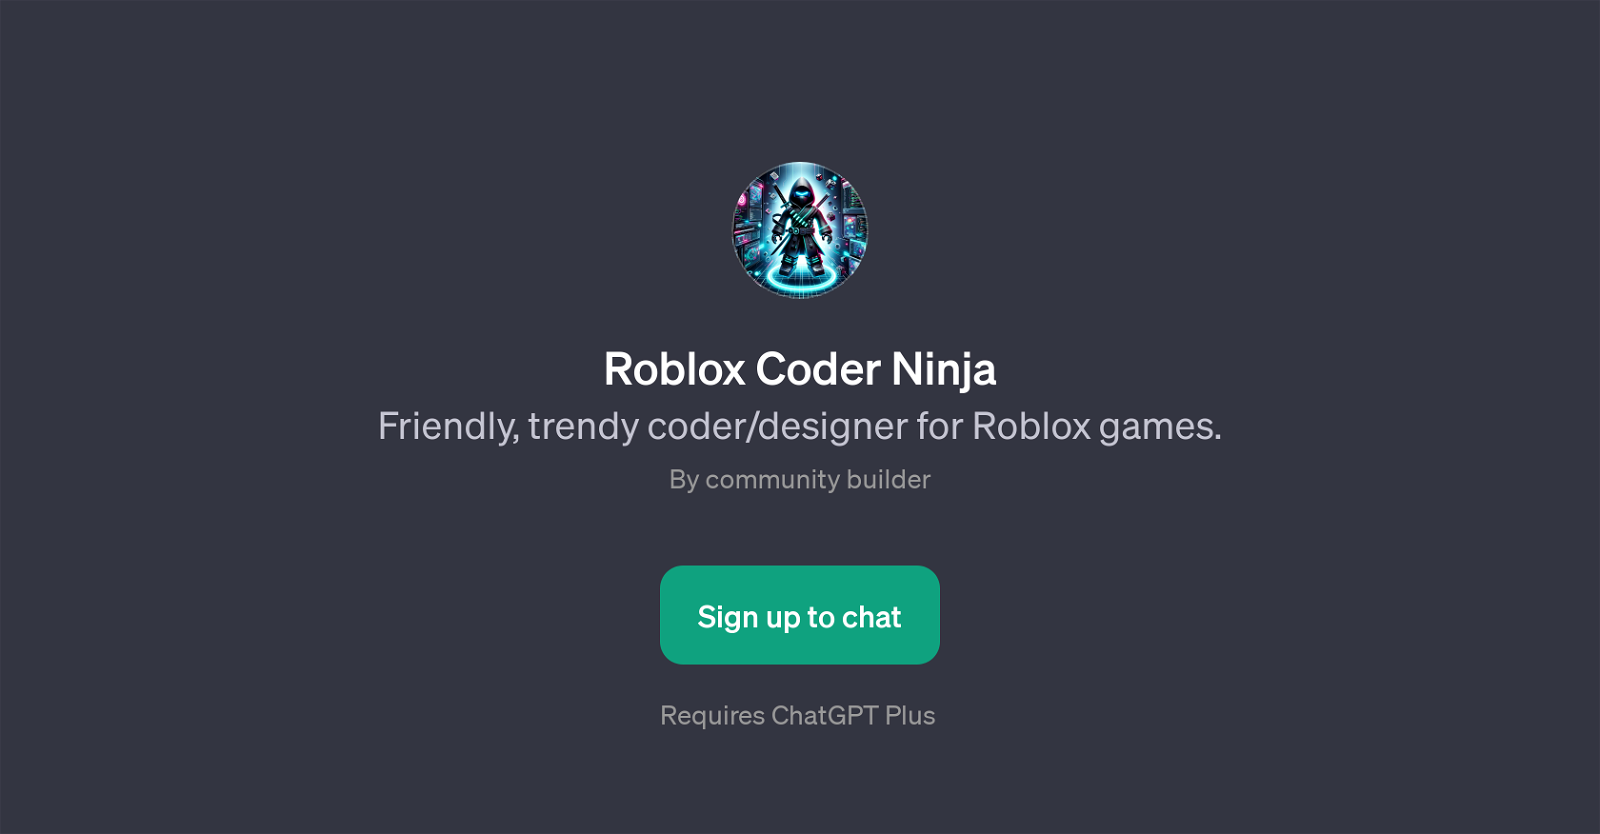 Roblox Coder Ninja website